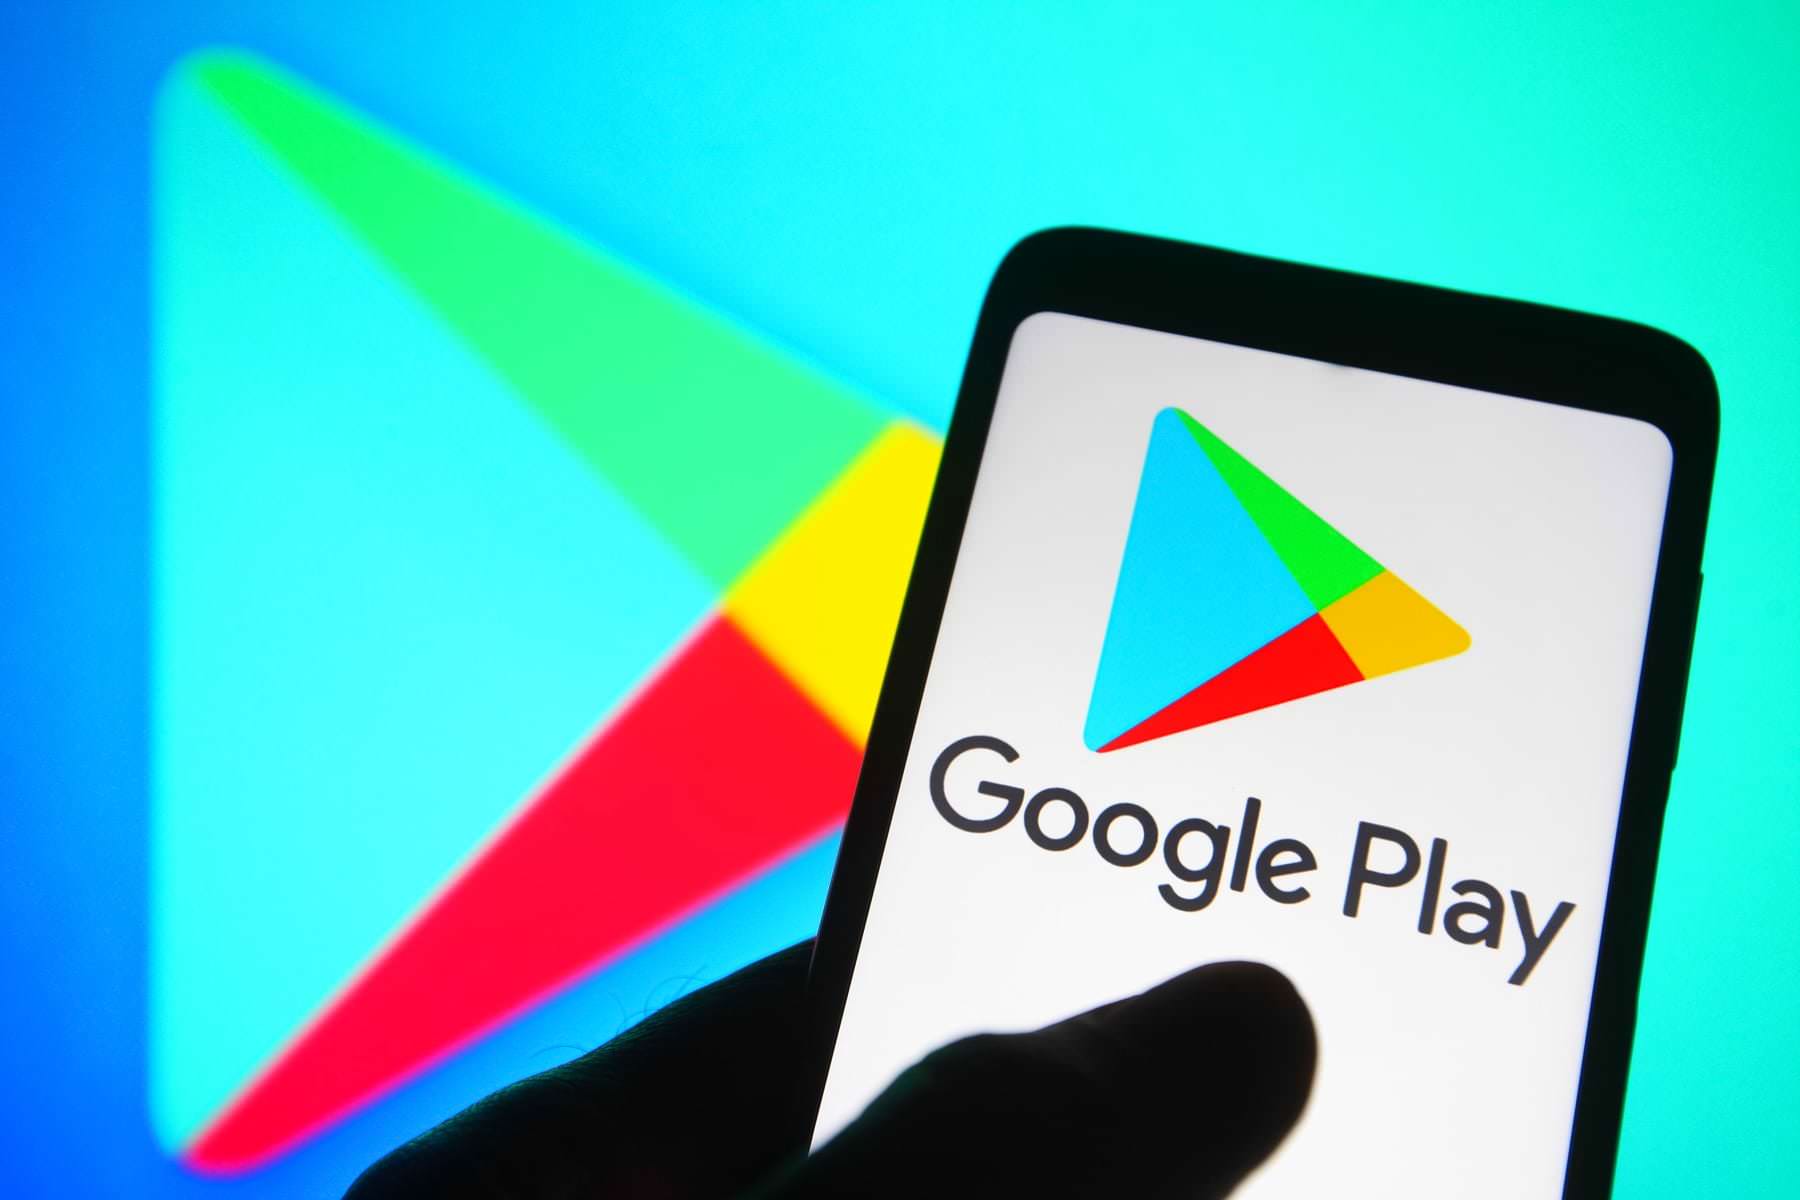 Google Play prohibió a los desarrolladores rusos descargar y actualizar aplicaciones pagas